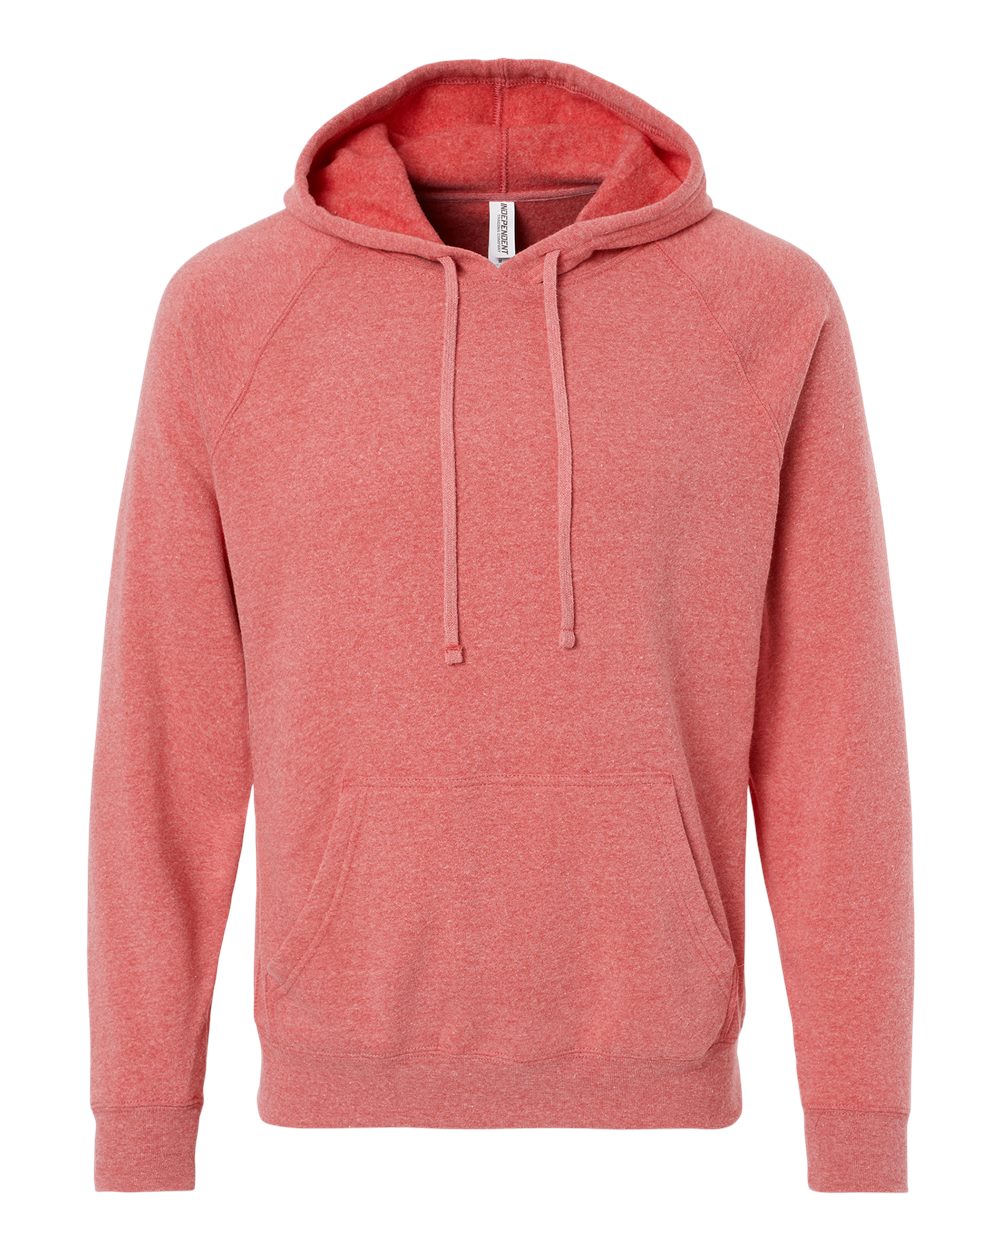 Unisex Special Blend Raglan Hooded Sweatshirt-